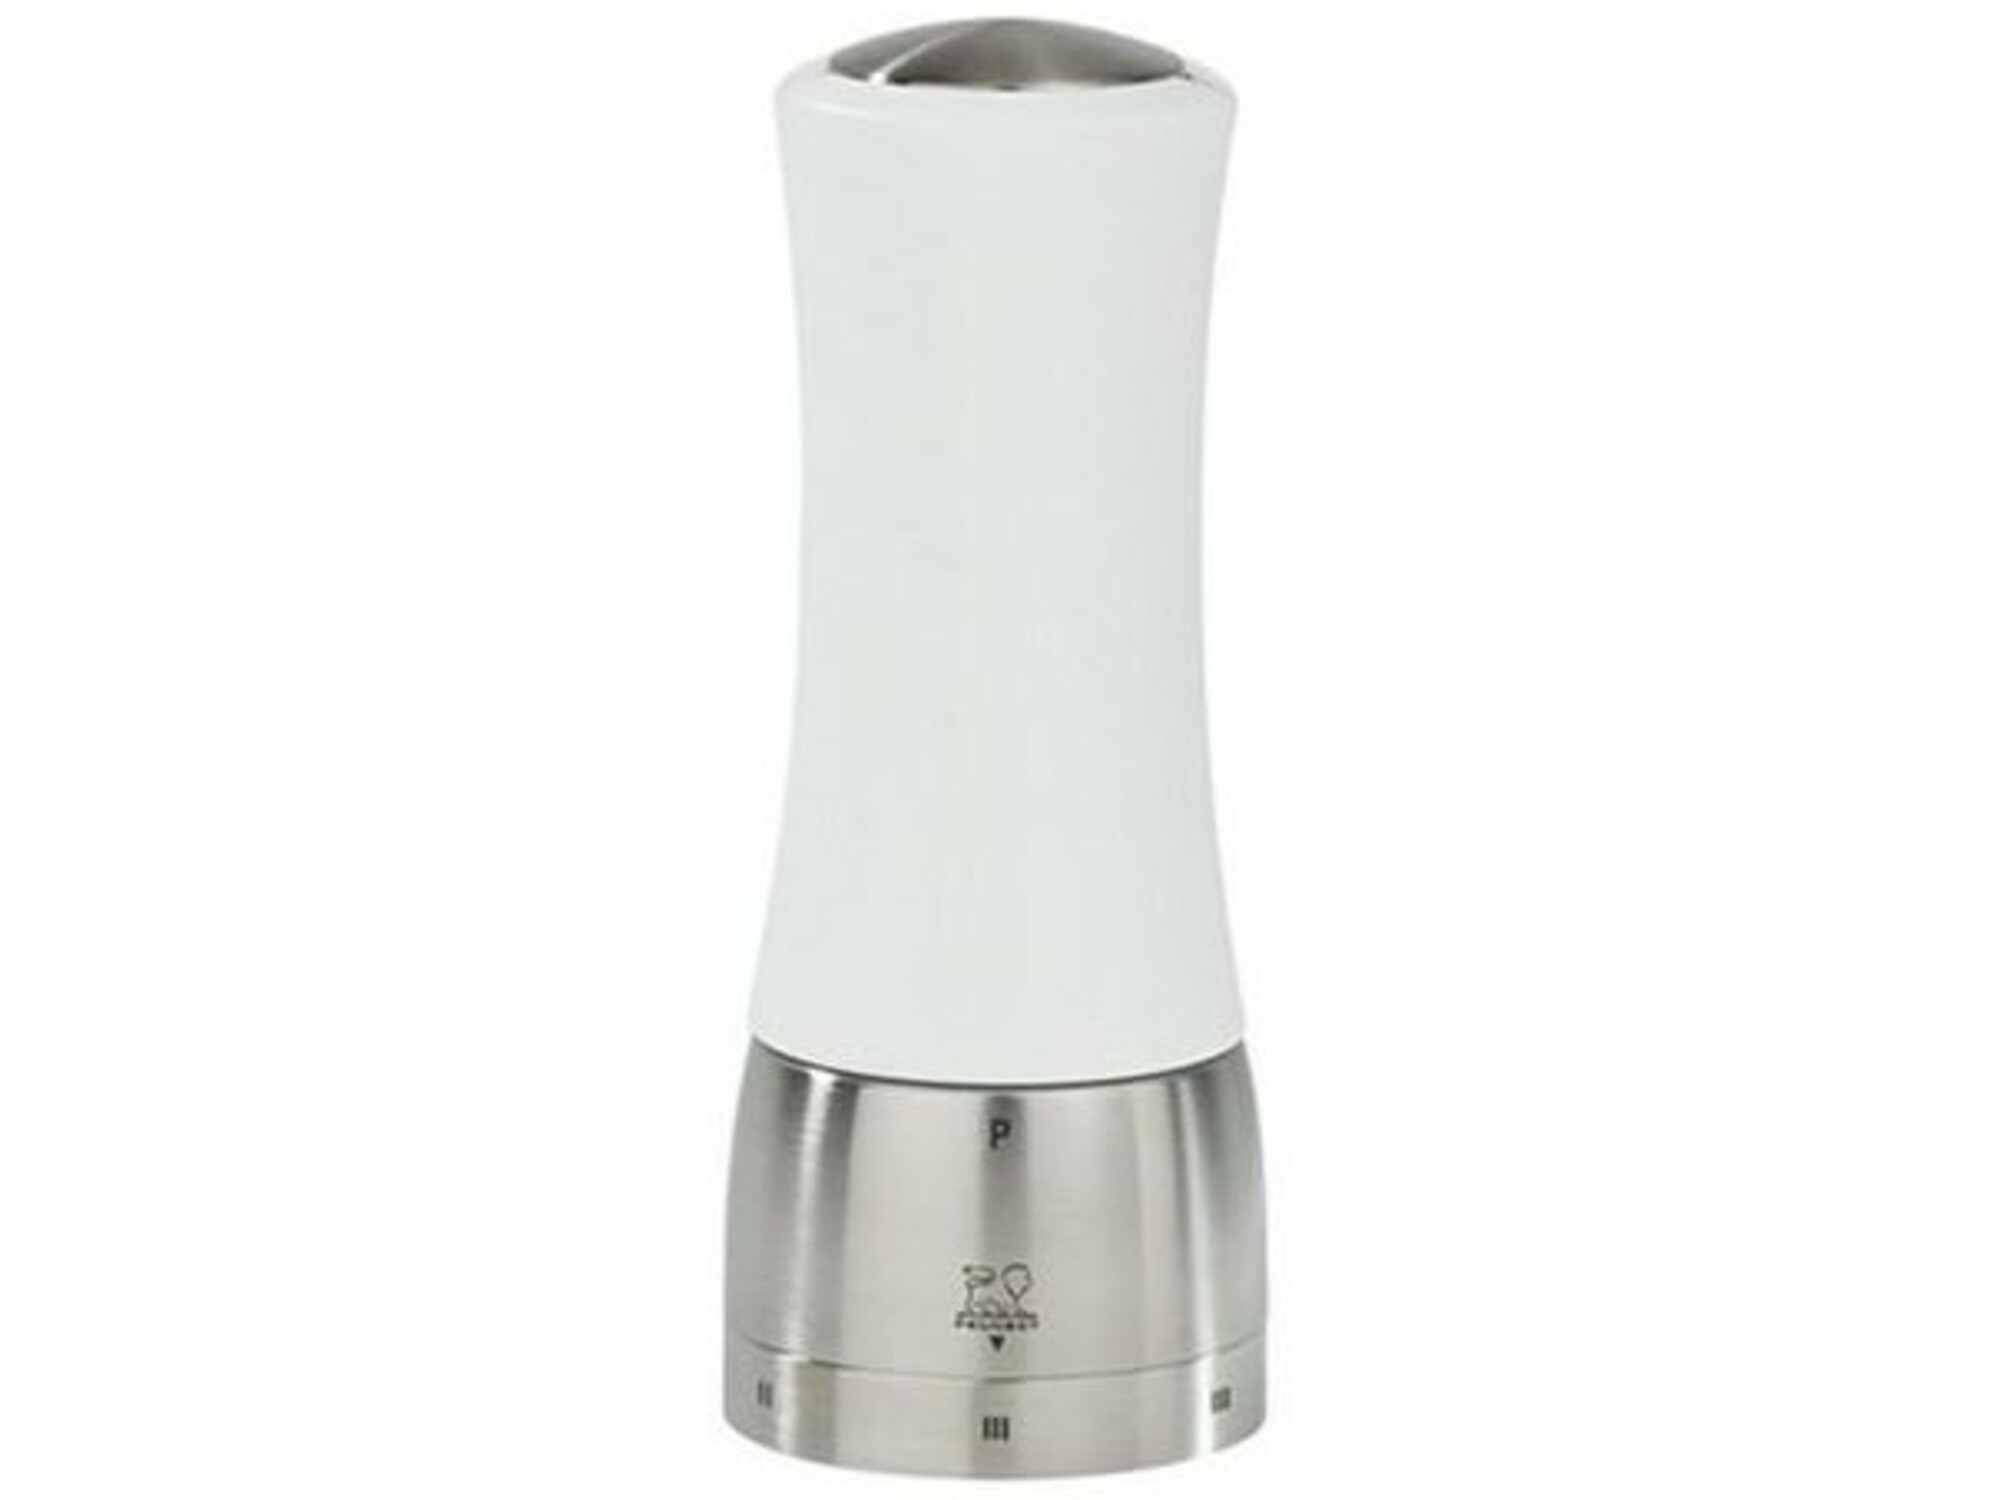 PEUGEOT mlinček za poper MADRAS 4006950028855 21 cm